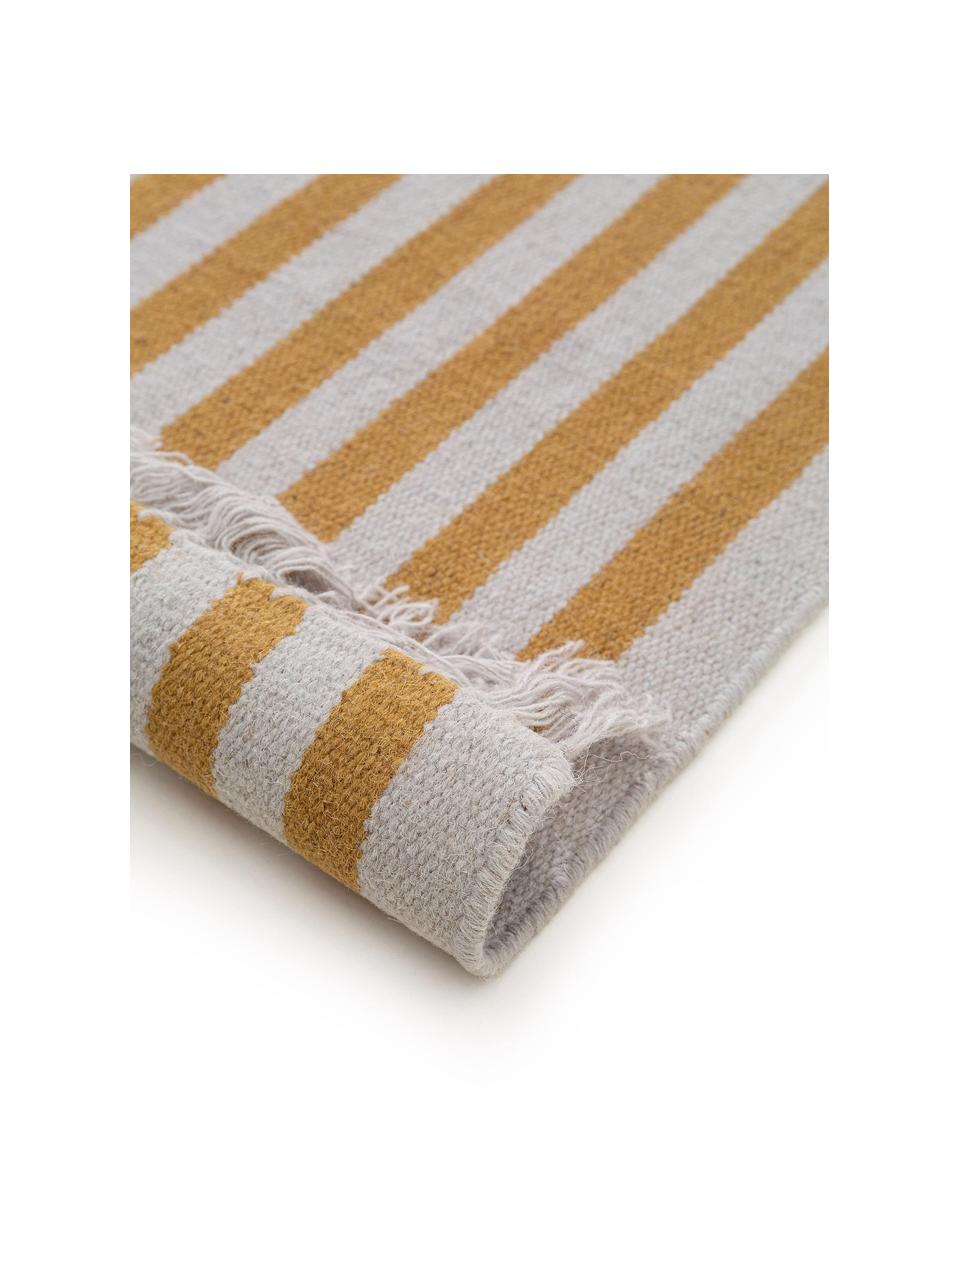 Chodnik z wełny z frędzlami Gitta, 90% wełna, 10% bawełna
Włókna dywanów wełnianych mogą nieznacznie rozluźniać się w pierwszych tygodniach użytkowania, co ustępuje po pewnym czasie, Żółty, jasny szary, S 70 x D 200 cm